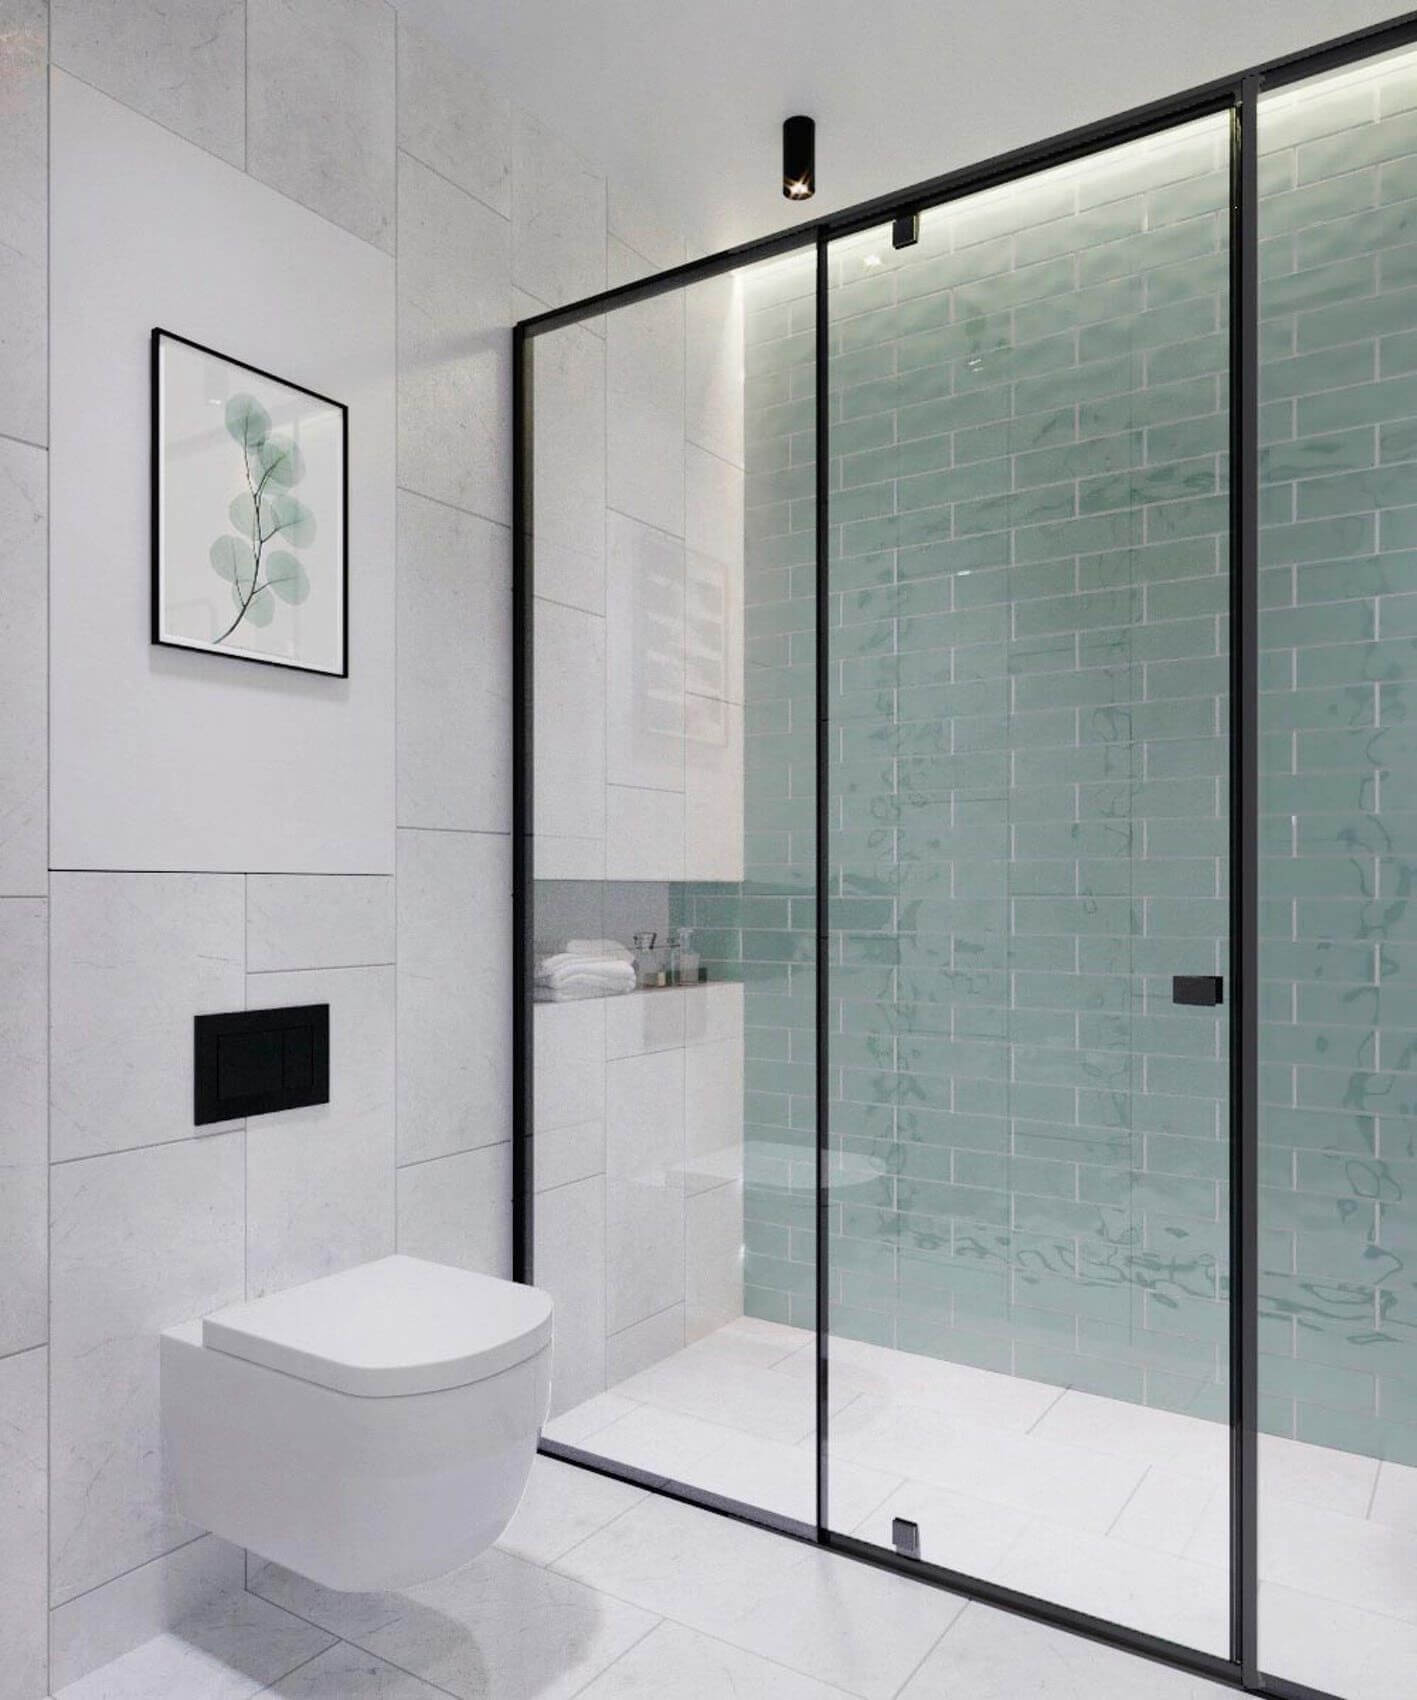 стекло отделяющее сухие зоны от мокрых в ванной комнате